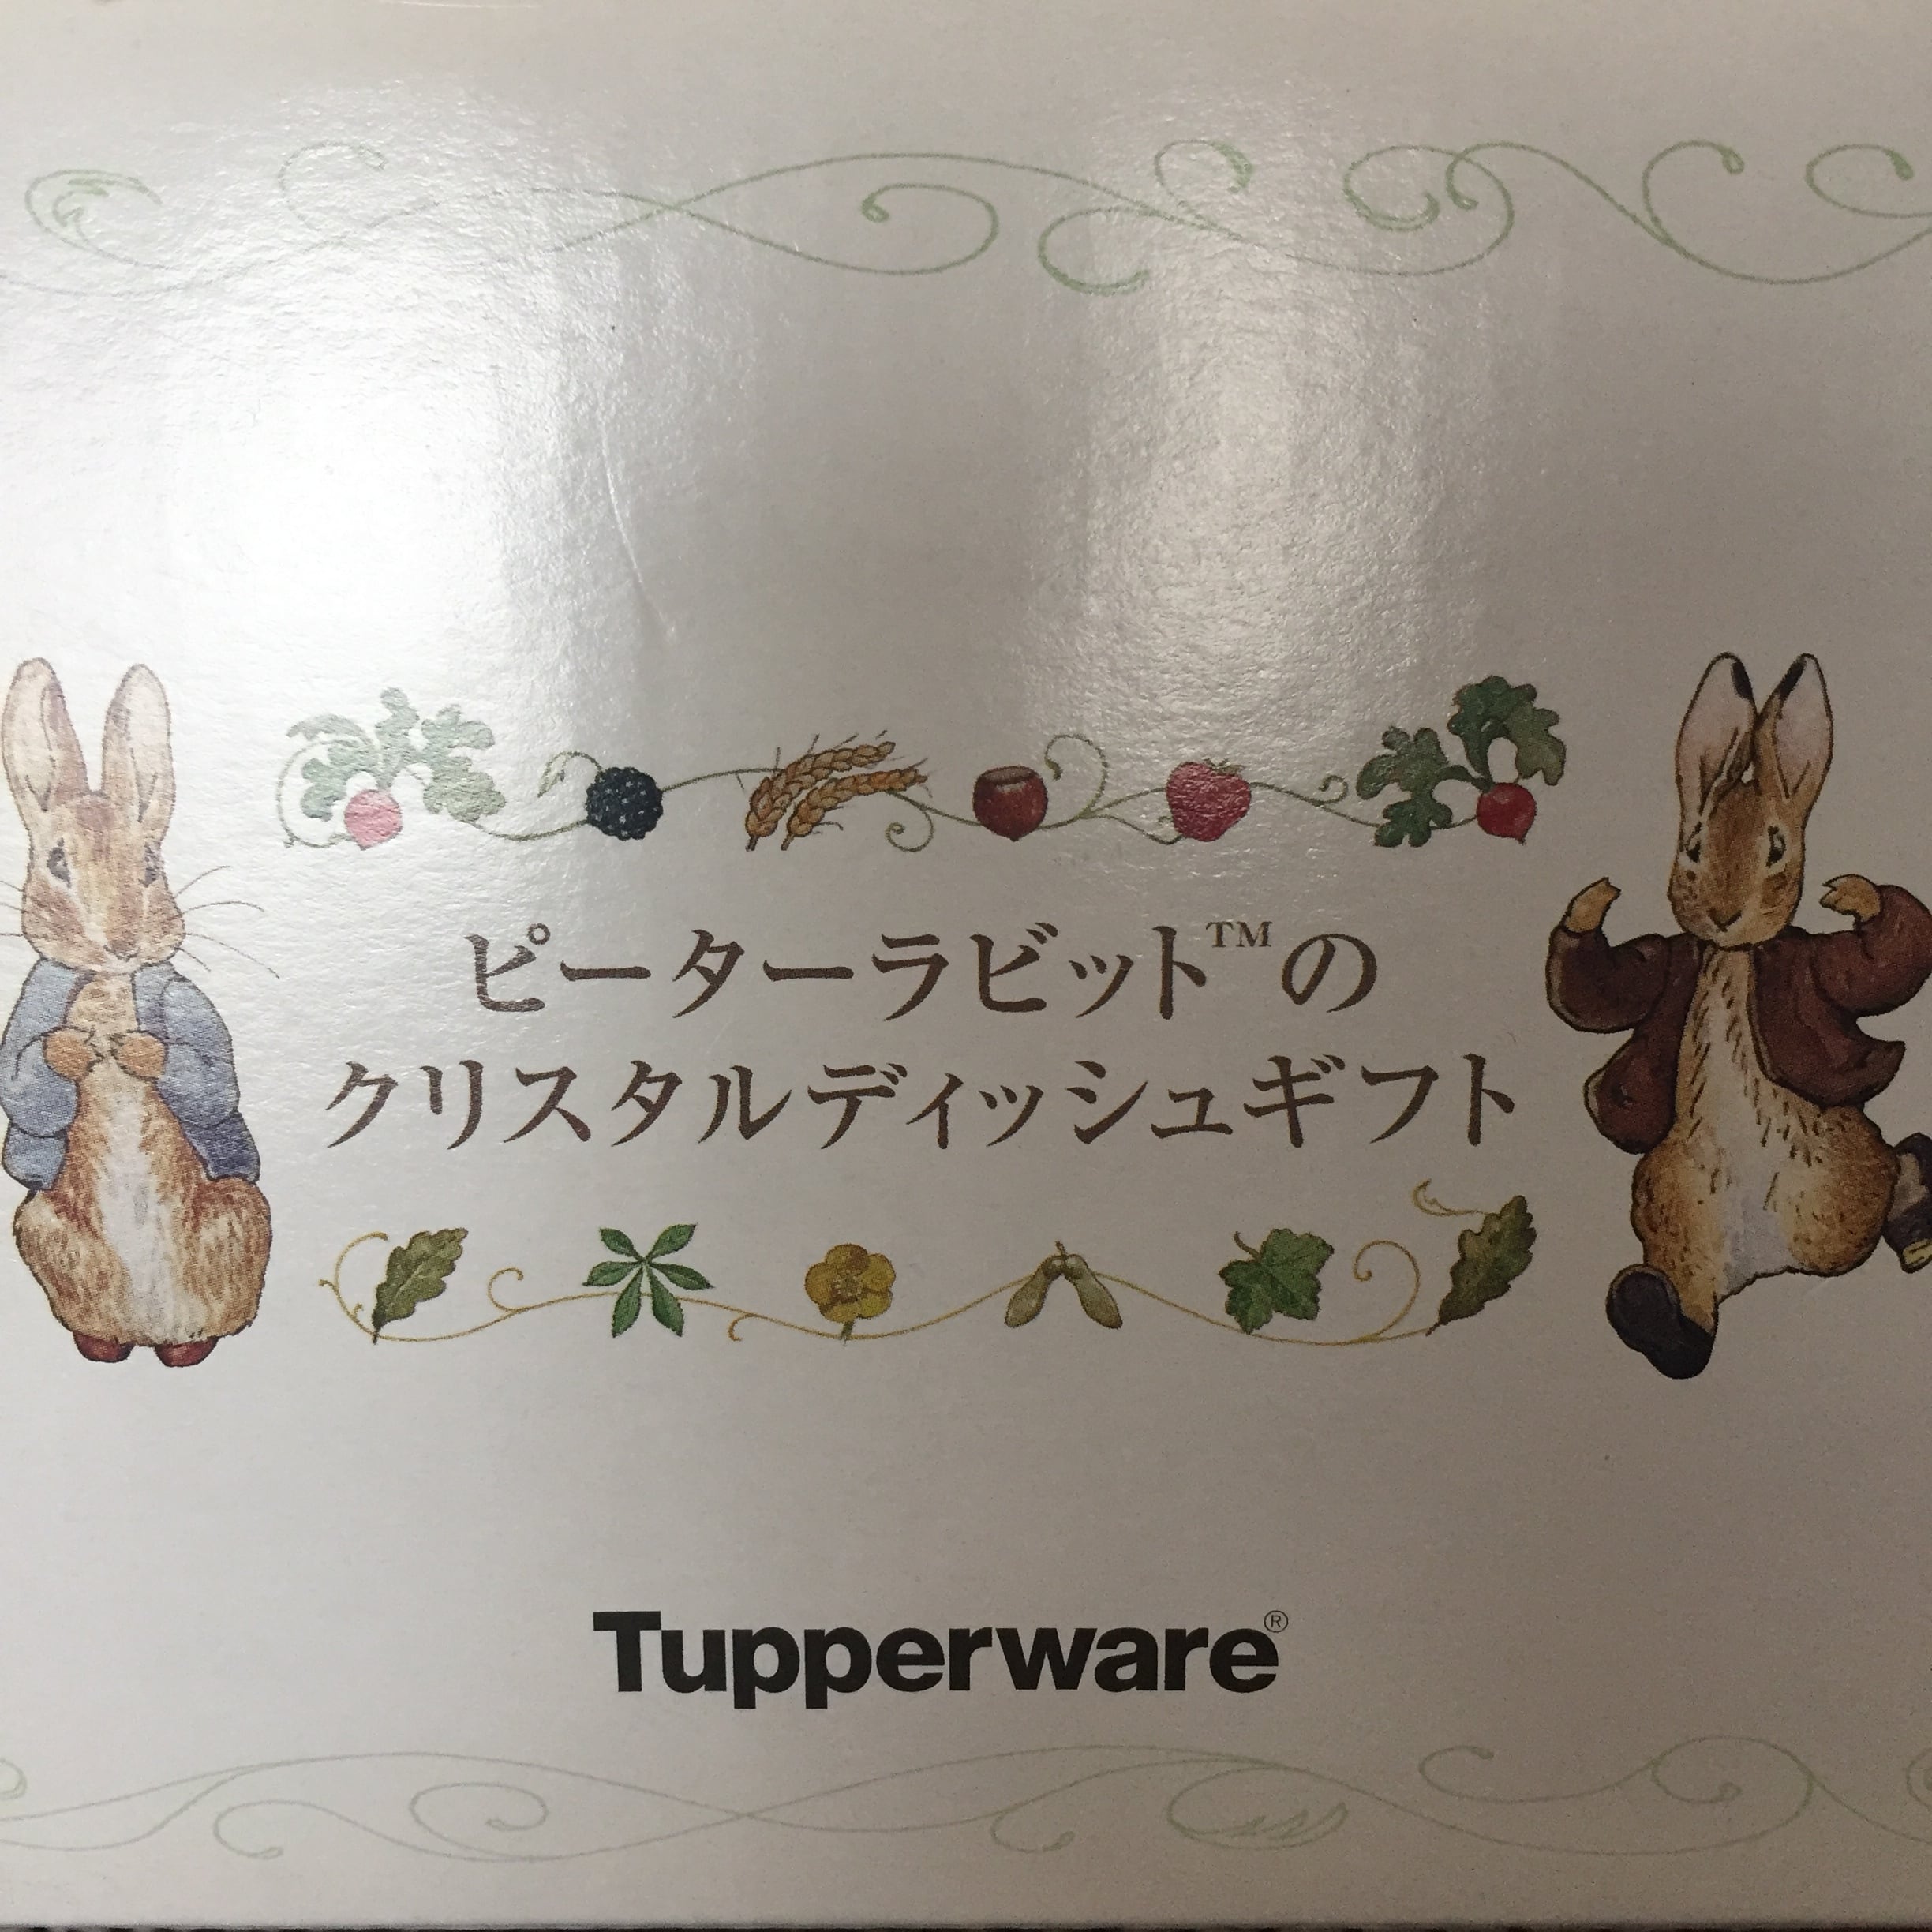 ピーターラビット クリスタルディッシュ 【 Tupperware